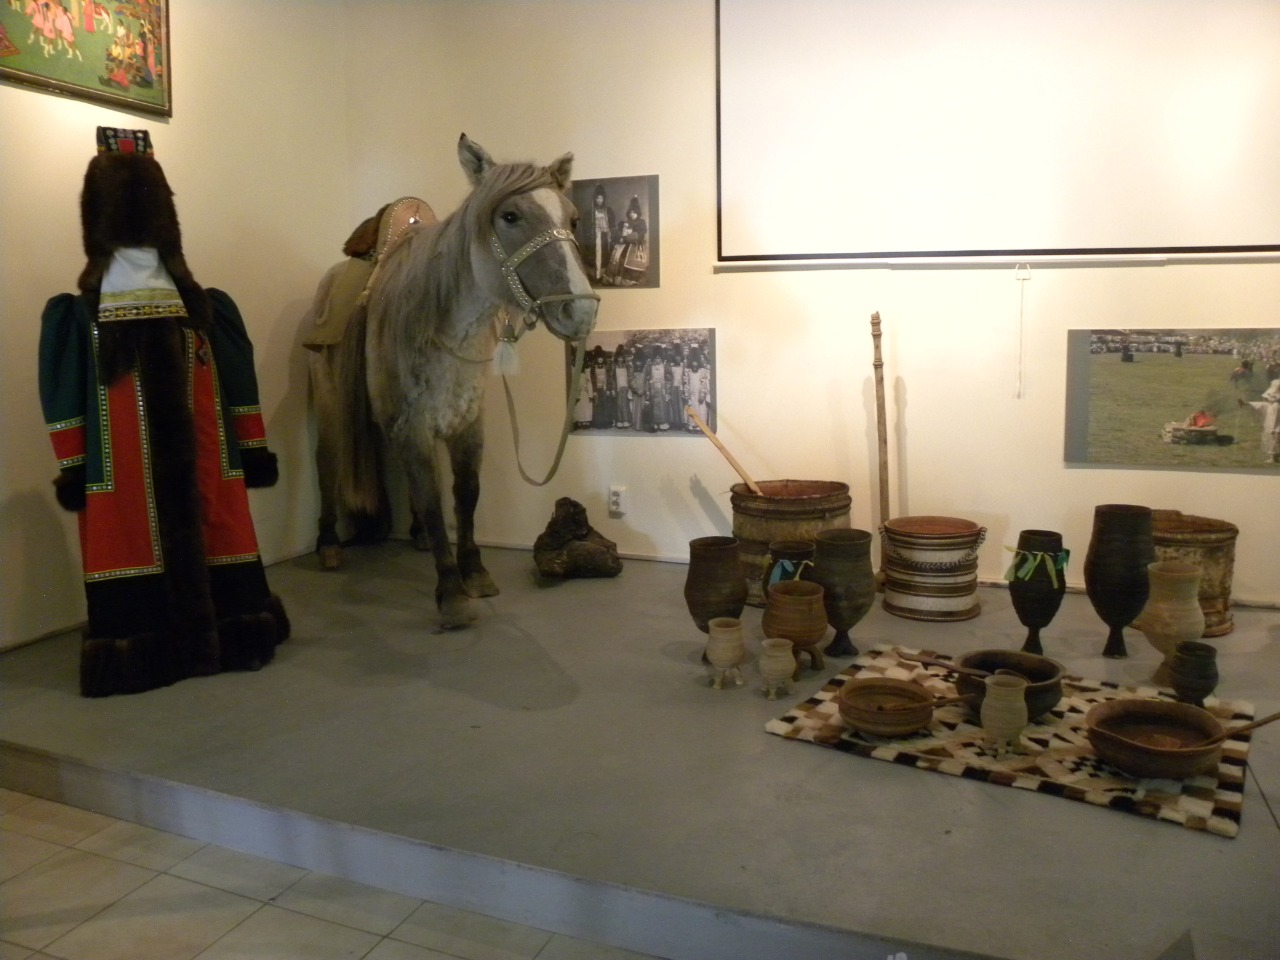 Музей музыки и фольклора народов Якутии